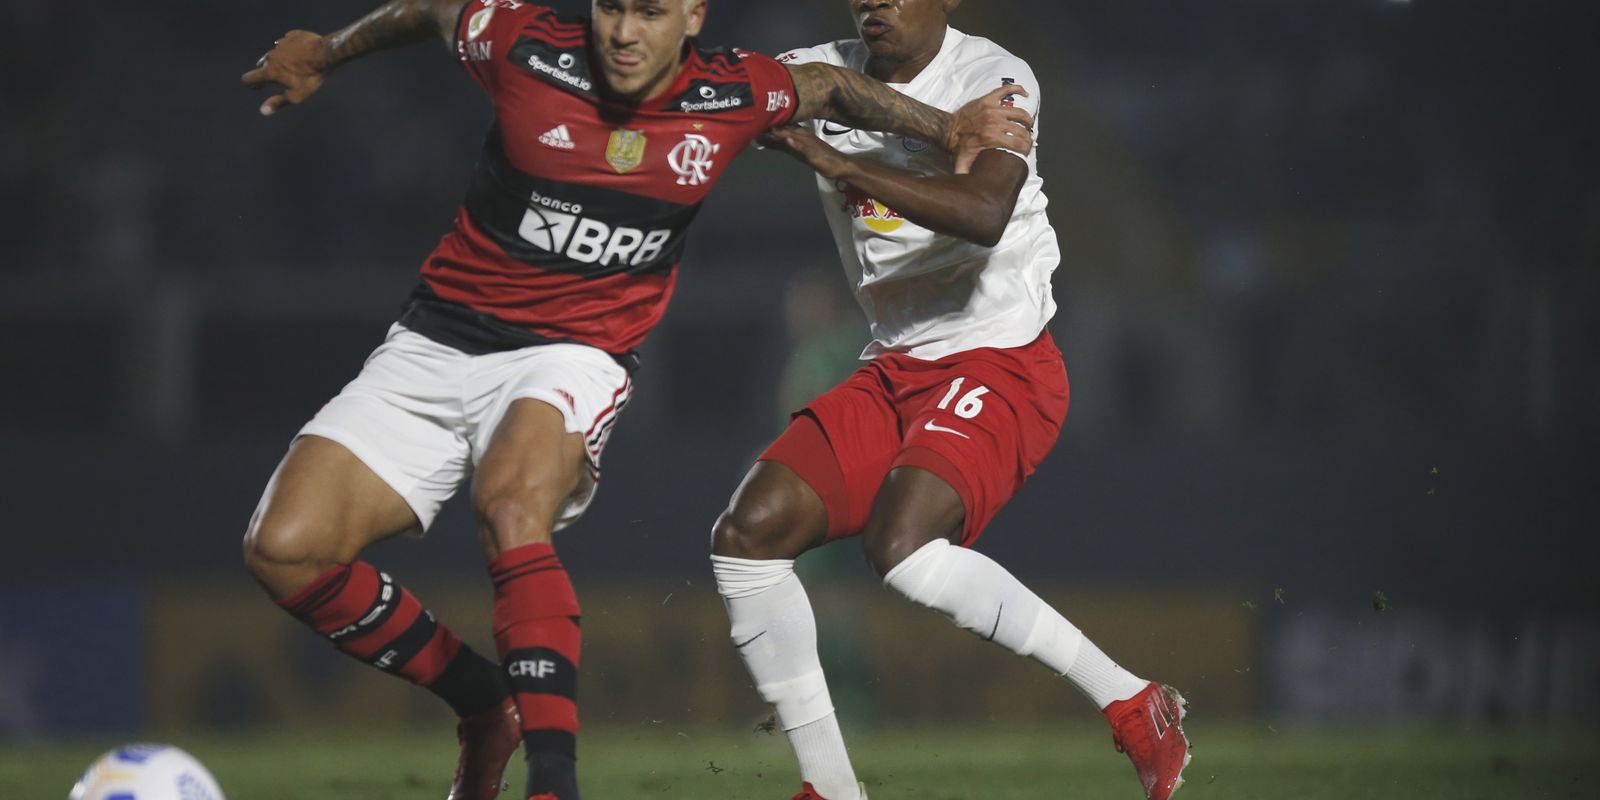 Flamengo X RB Bragantino: Detalhes da partida, estatísticas